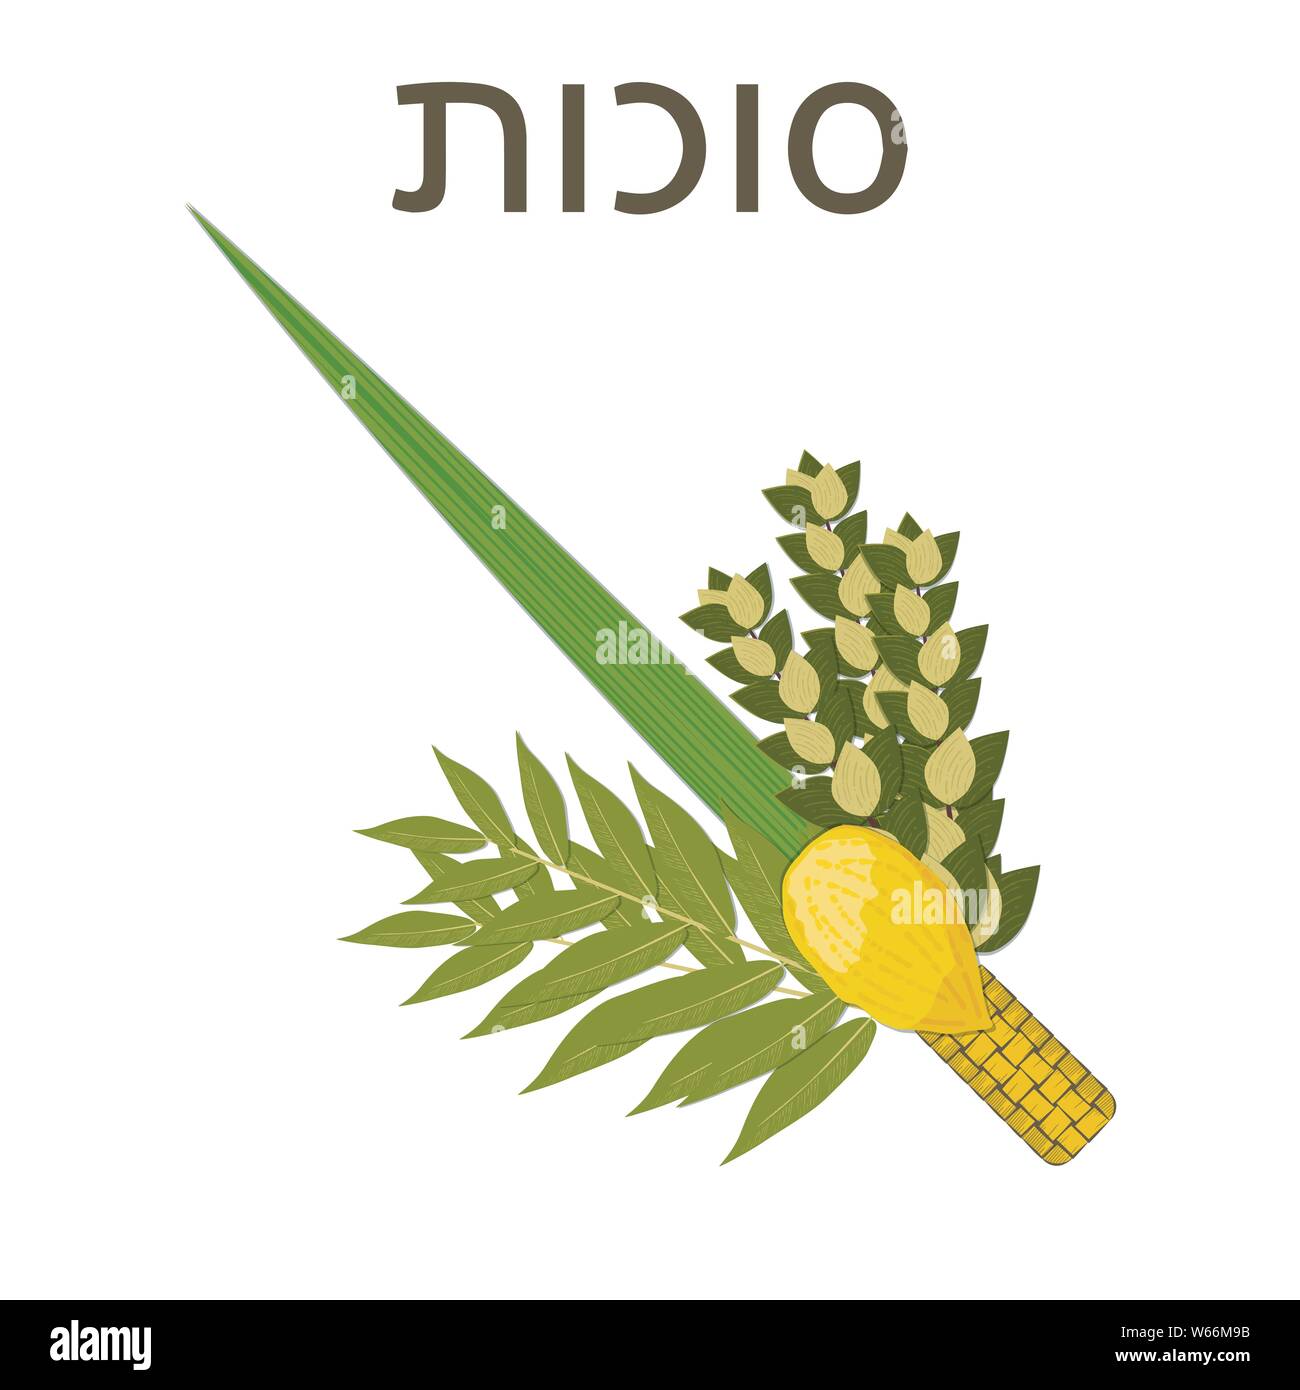 Souccot. Concept de vacances judaïque. Symboles traditionnels - Etrog, Loulav, hadas, l'arava texte Hébreu - Souccot Illustration de Vecteur